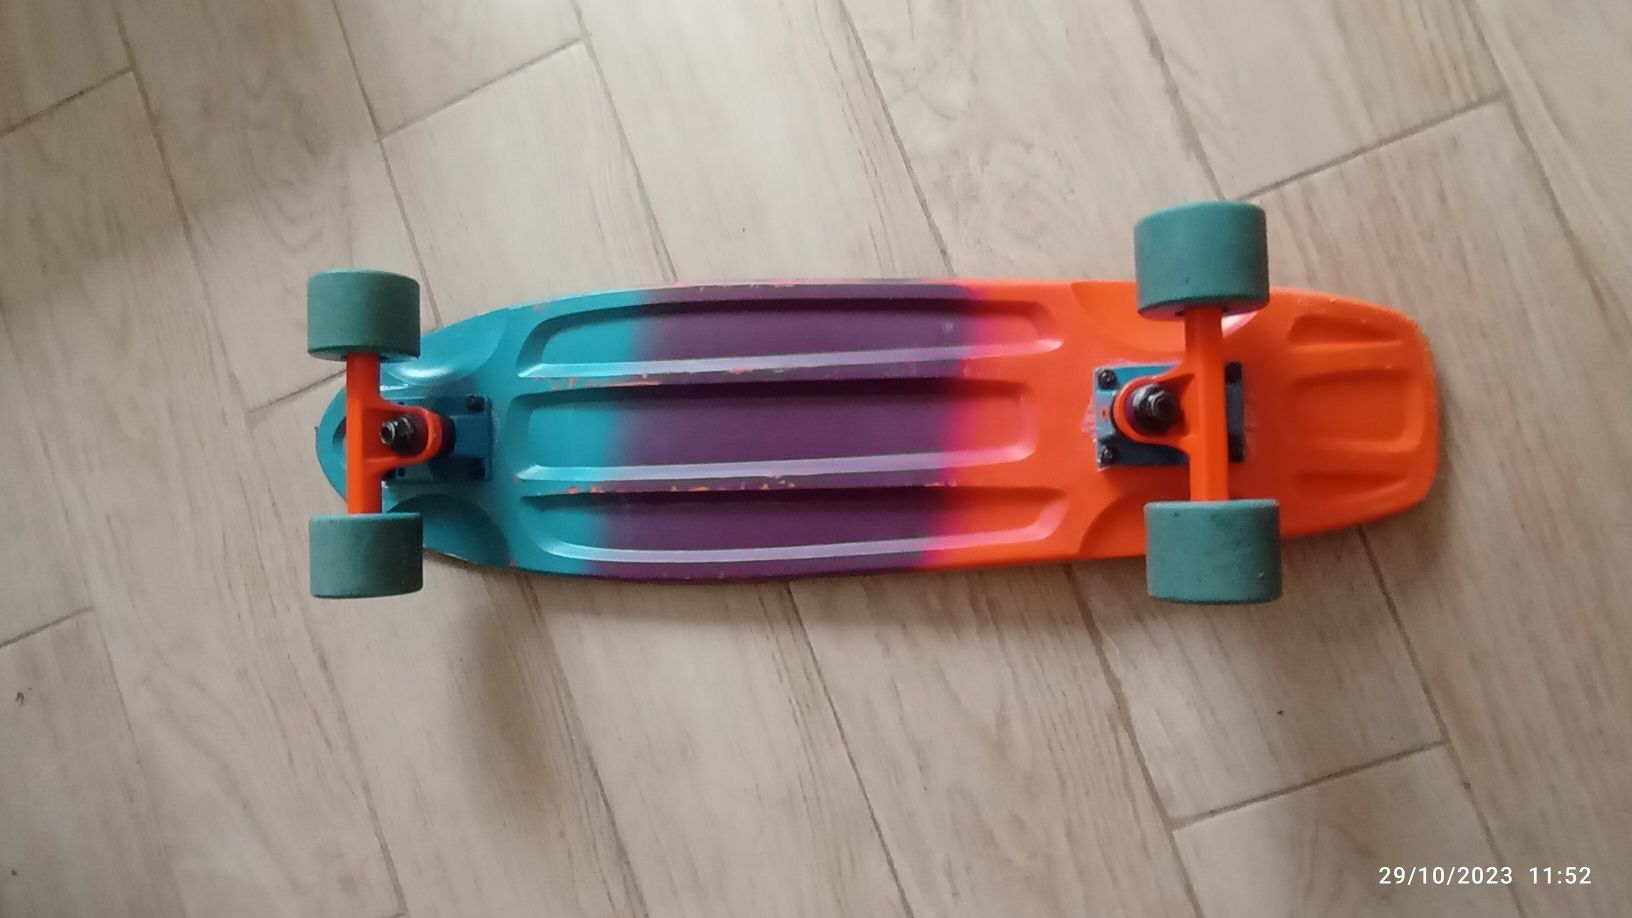 Skate/patins/rodas